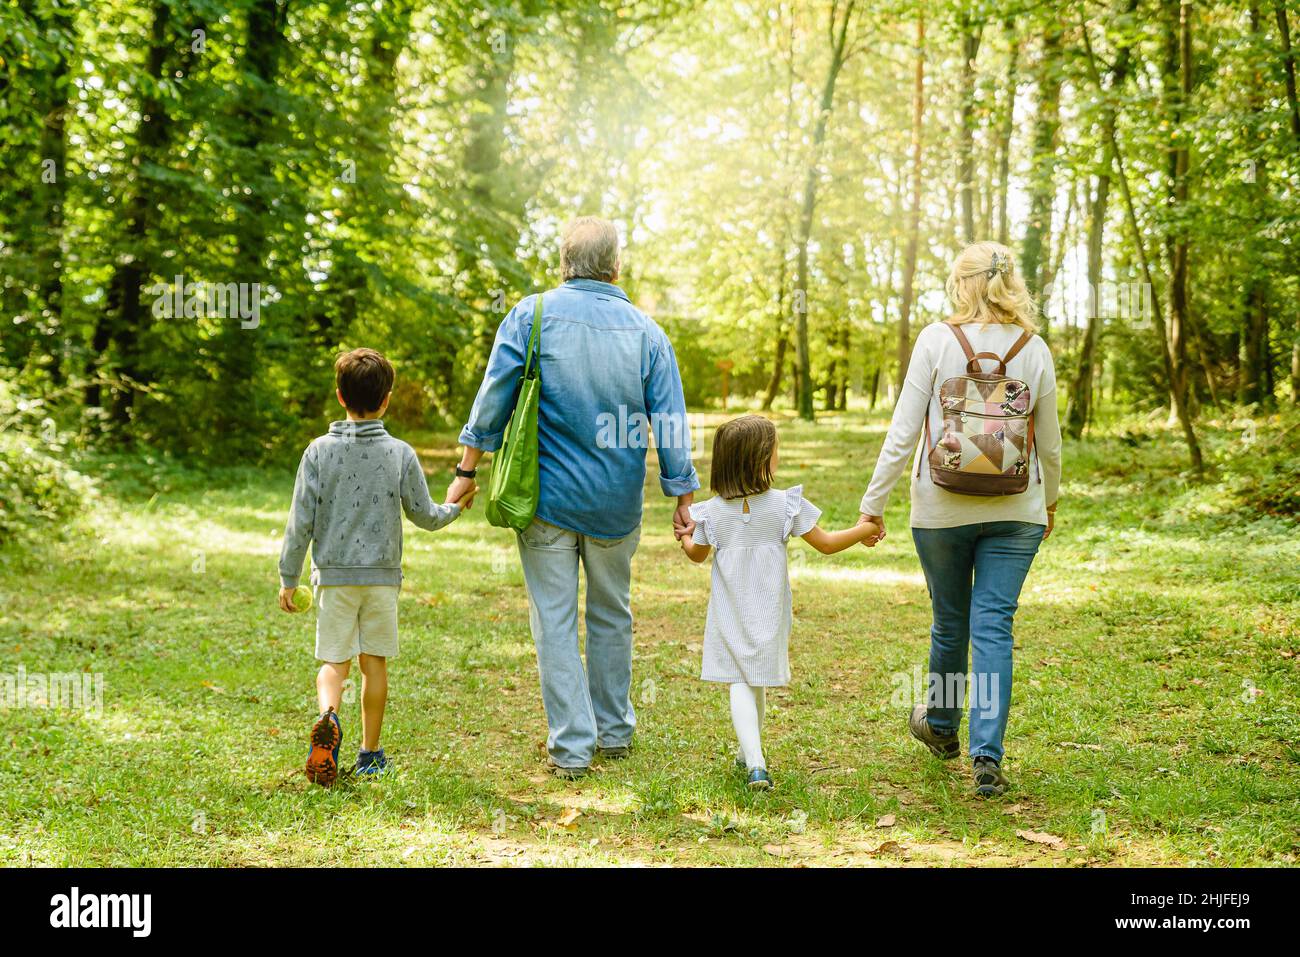 Nietos y abuelos caminando juntos rodeados de árboles en el parque Foto de stock